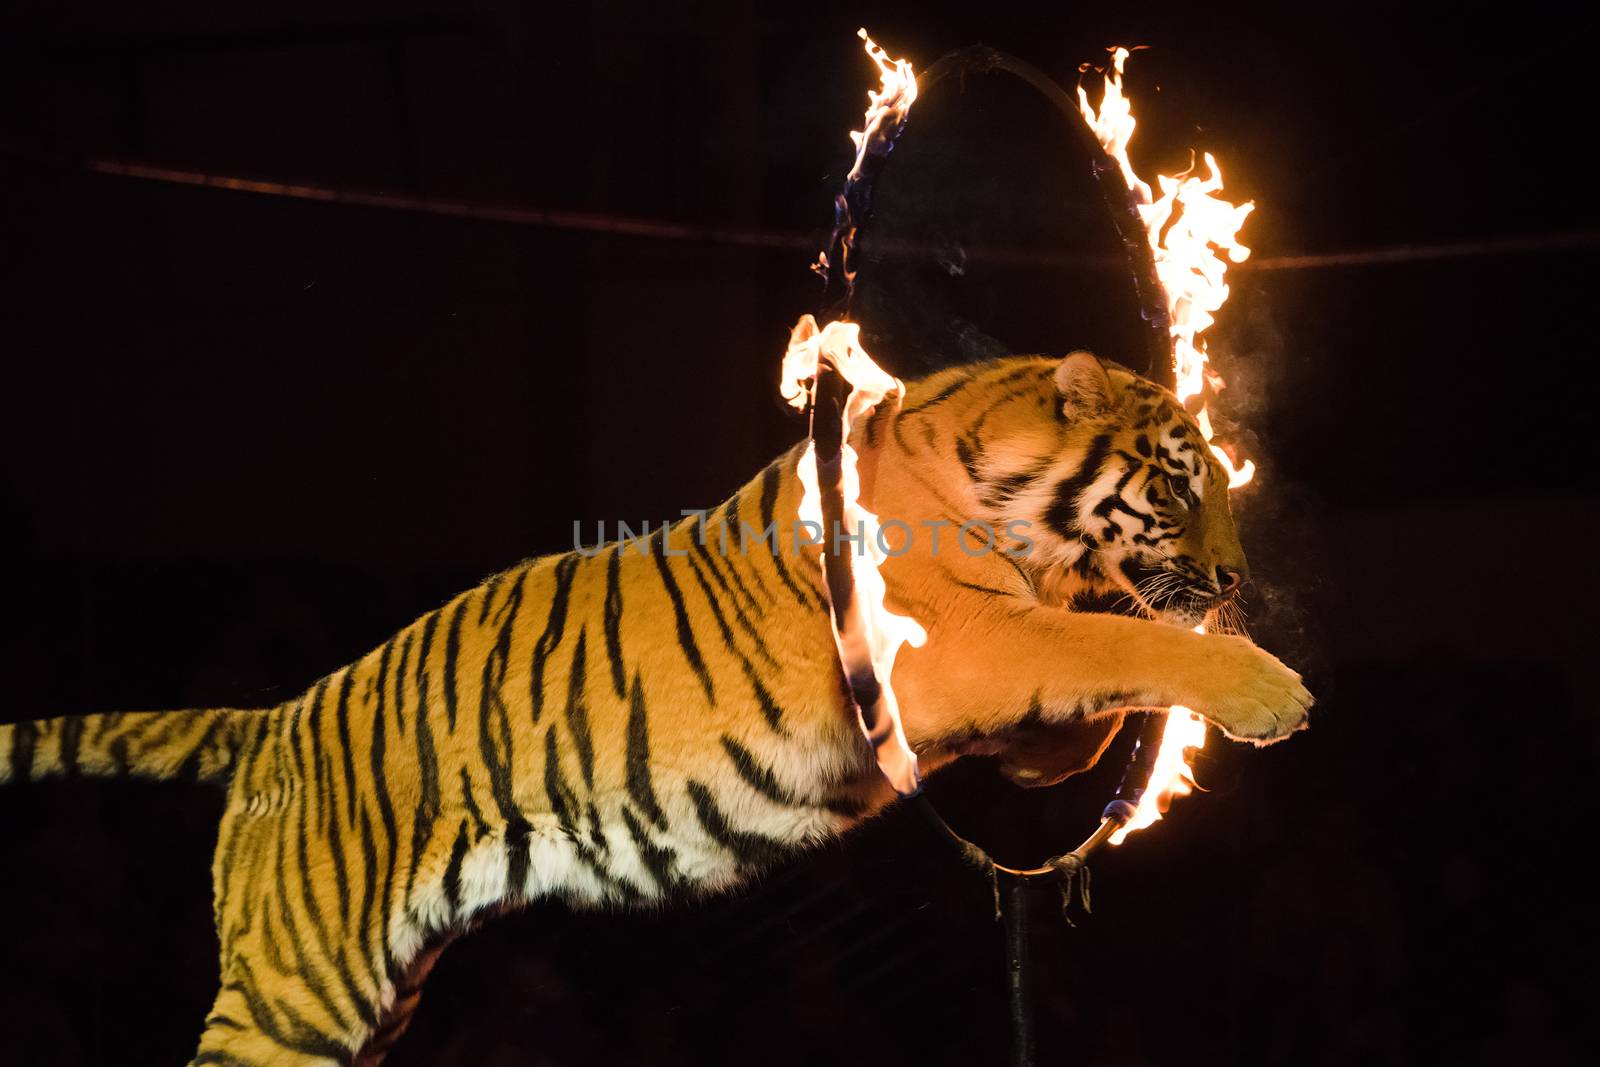 Circus.Tiger jumps through fire by grigorenko